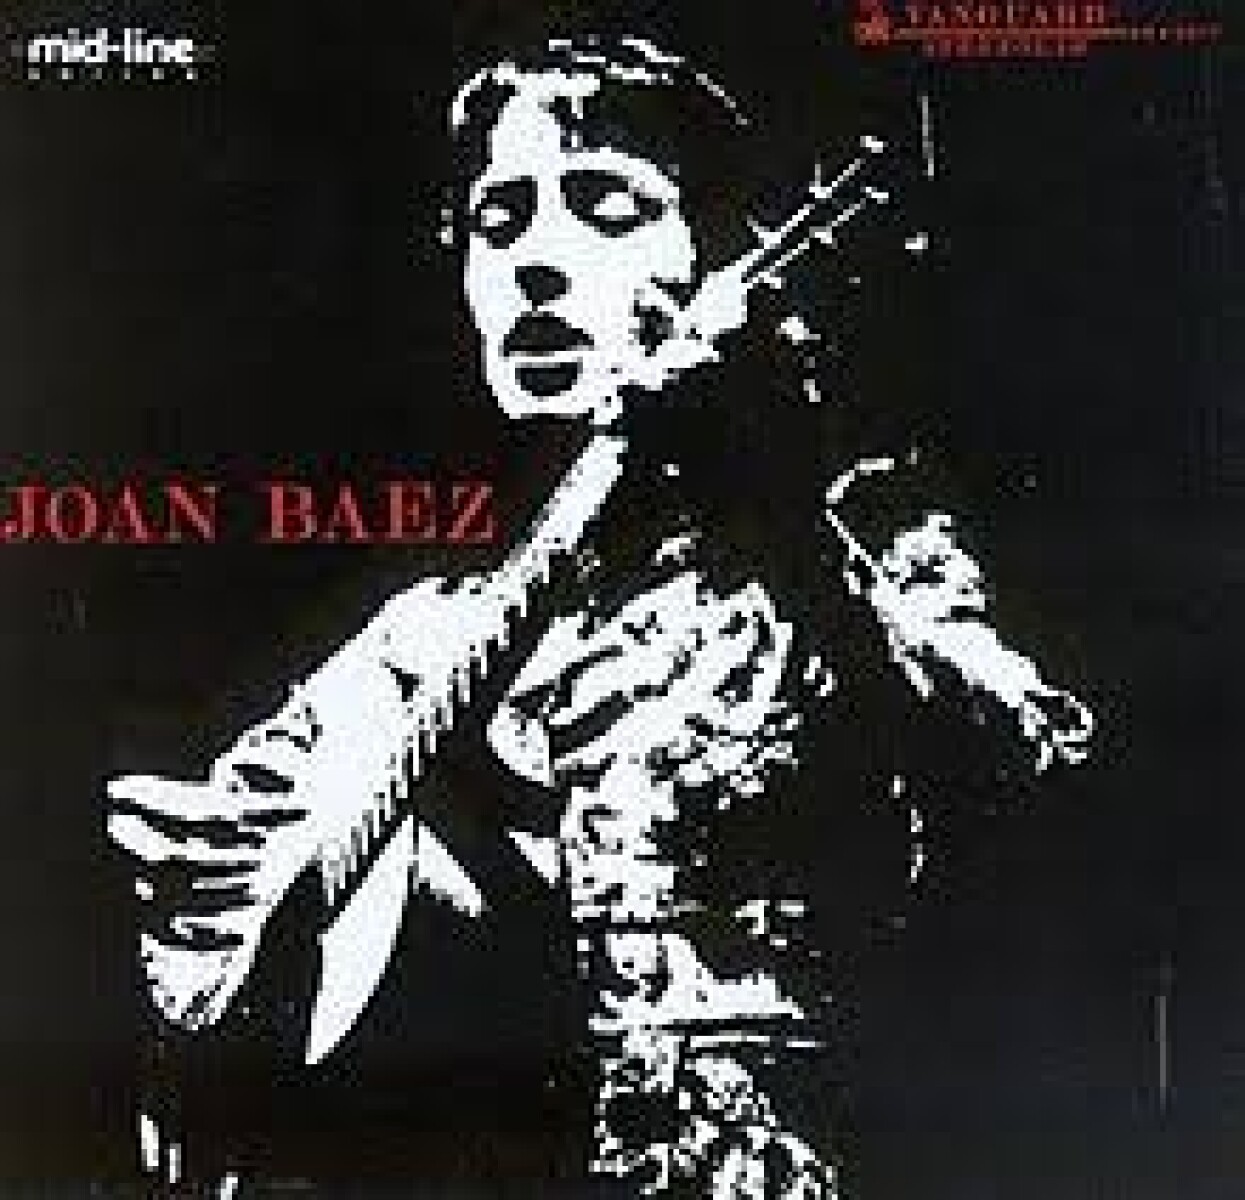 (l) Joan Baez- Joan Baez - Vinilo 